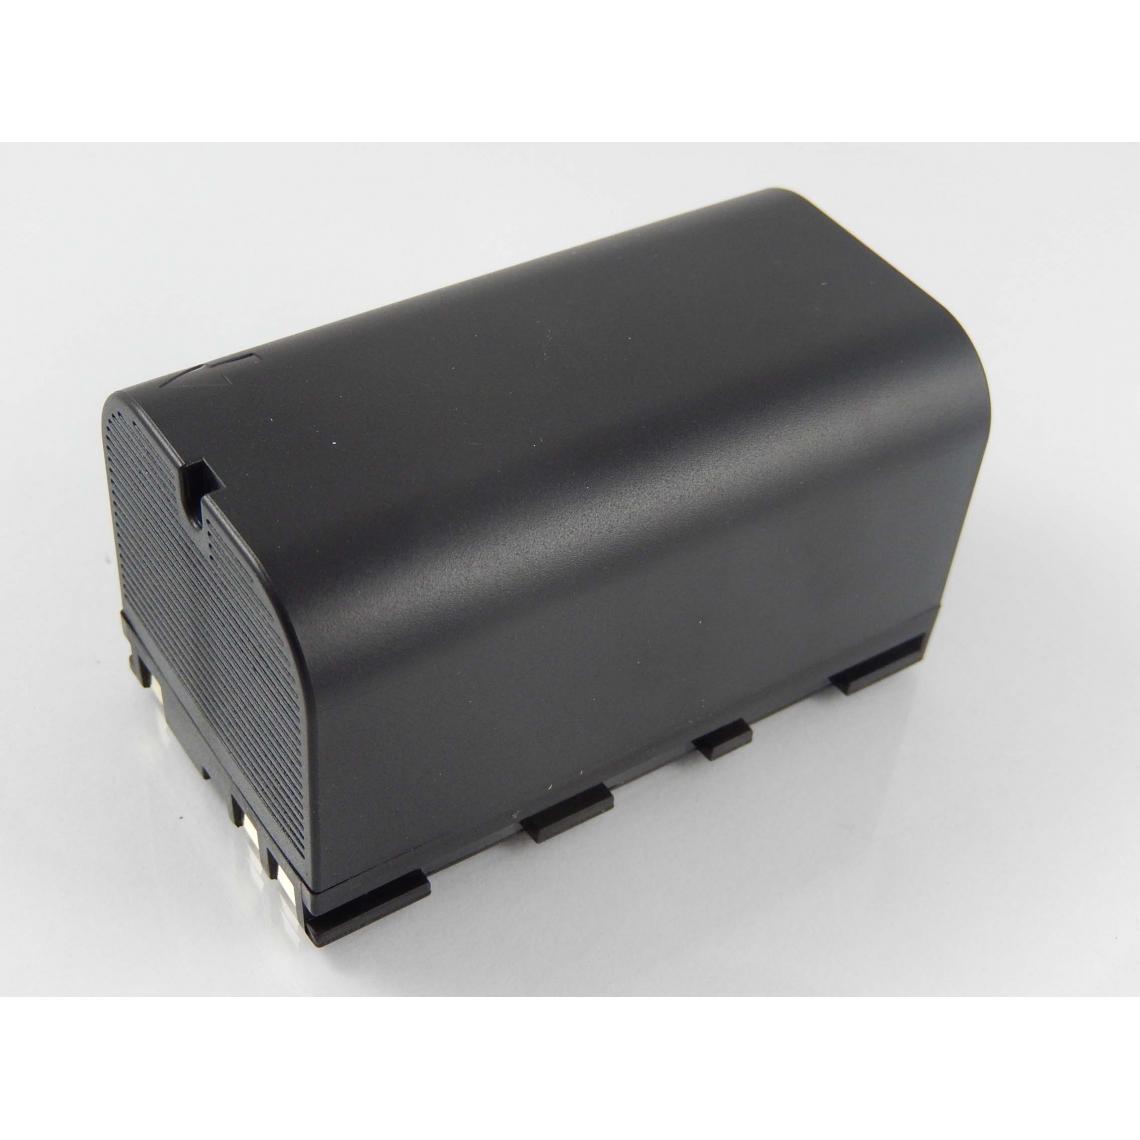 Vhbw - vhbw Batterie compatible avec Leica SR530 GPS, Stonex R6+ dispositif de mesure laser, outil de mesure (5600mAh, 7,4V, Li-ion) - Piles rechargeables